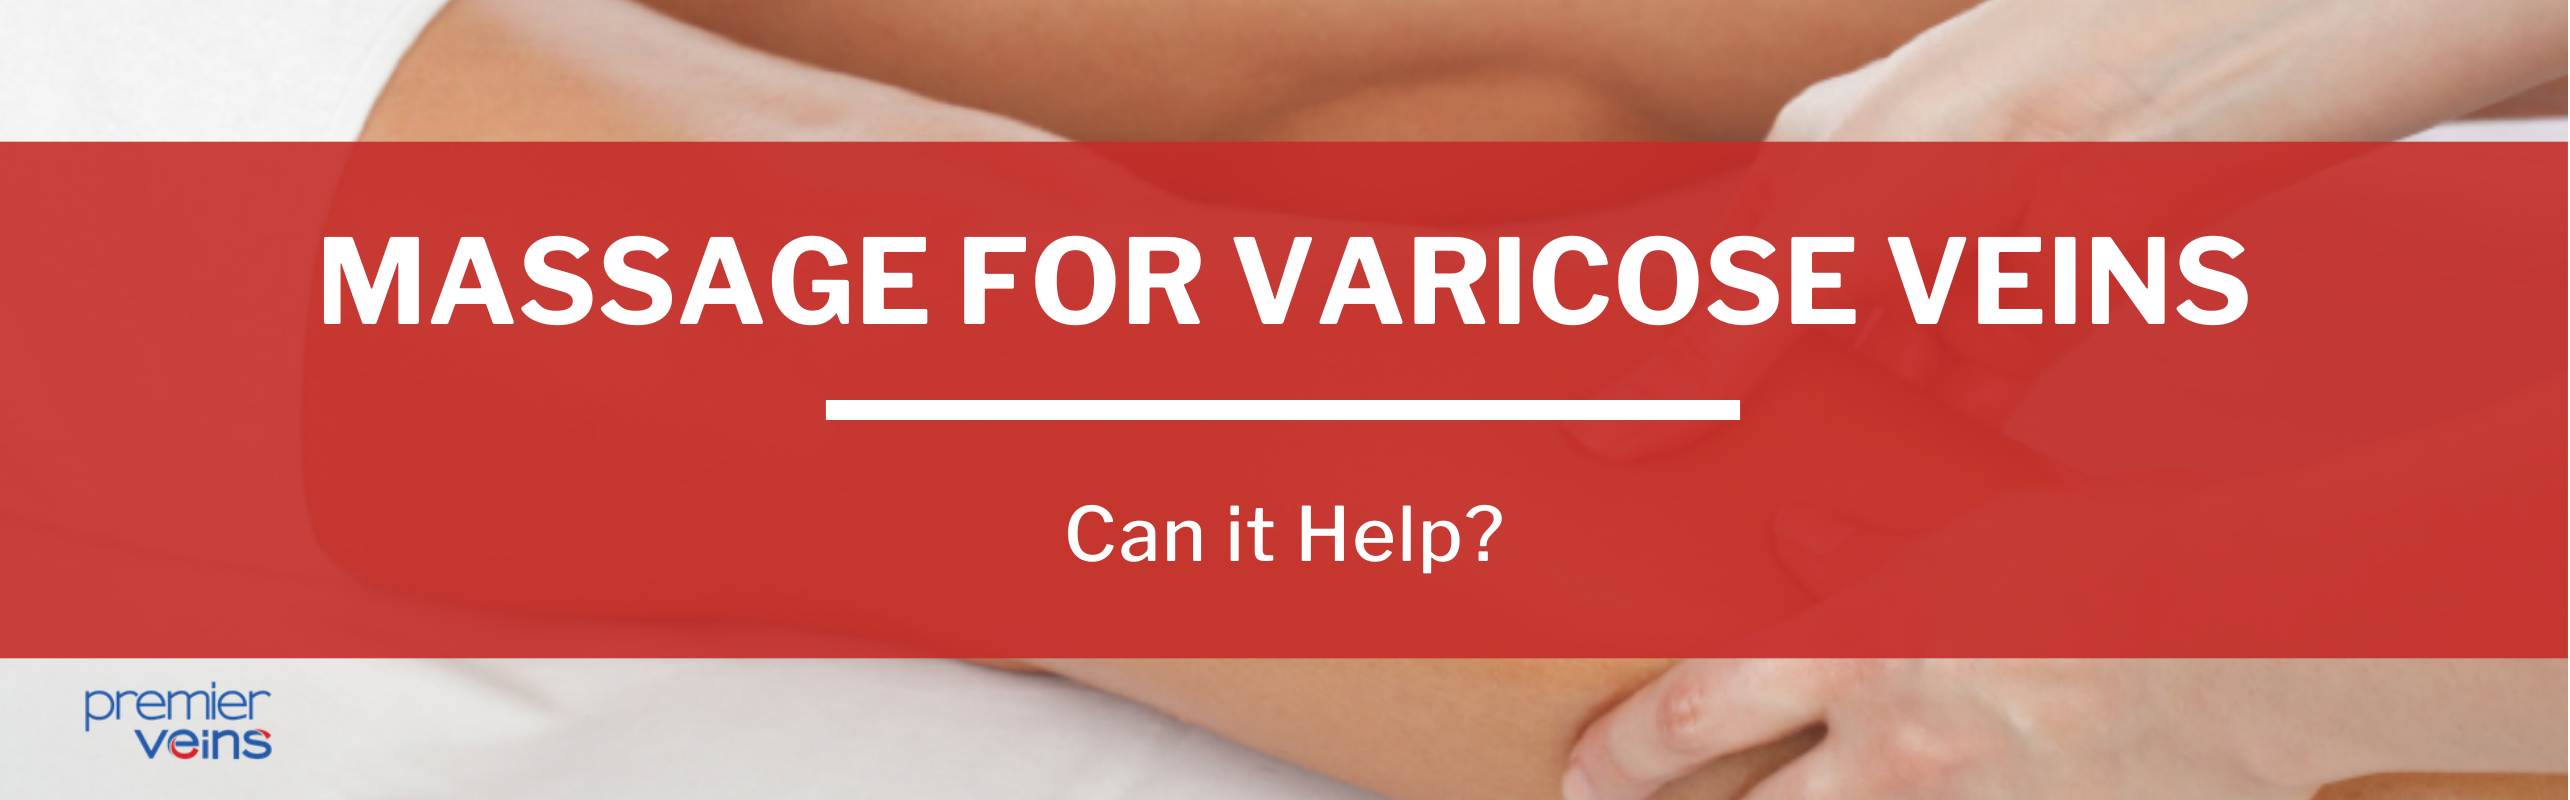 Does Massage Help Varicose Veins?